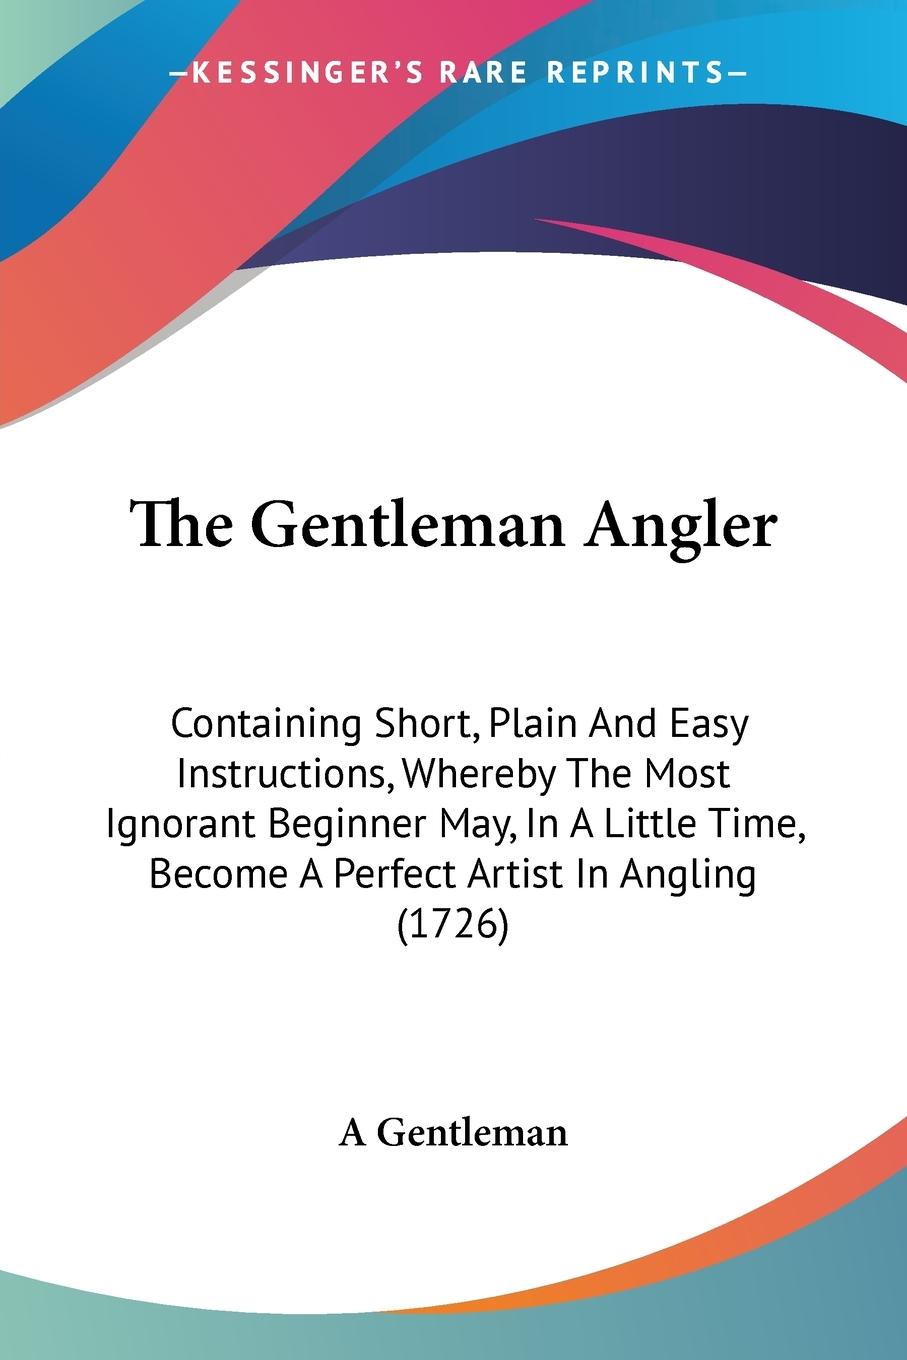 The Gentleman Angler - A Gentleman